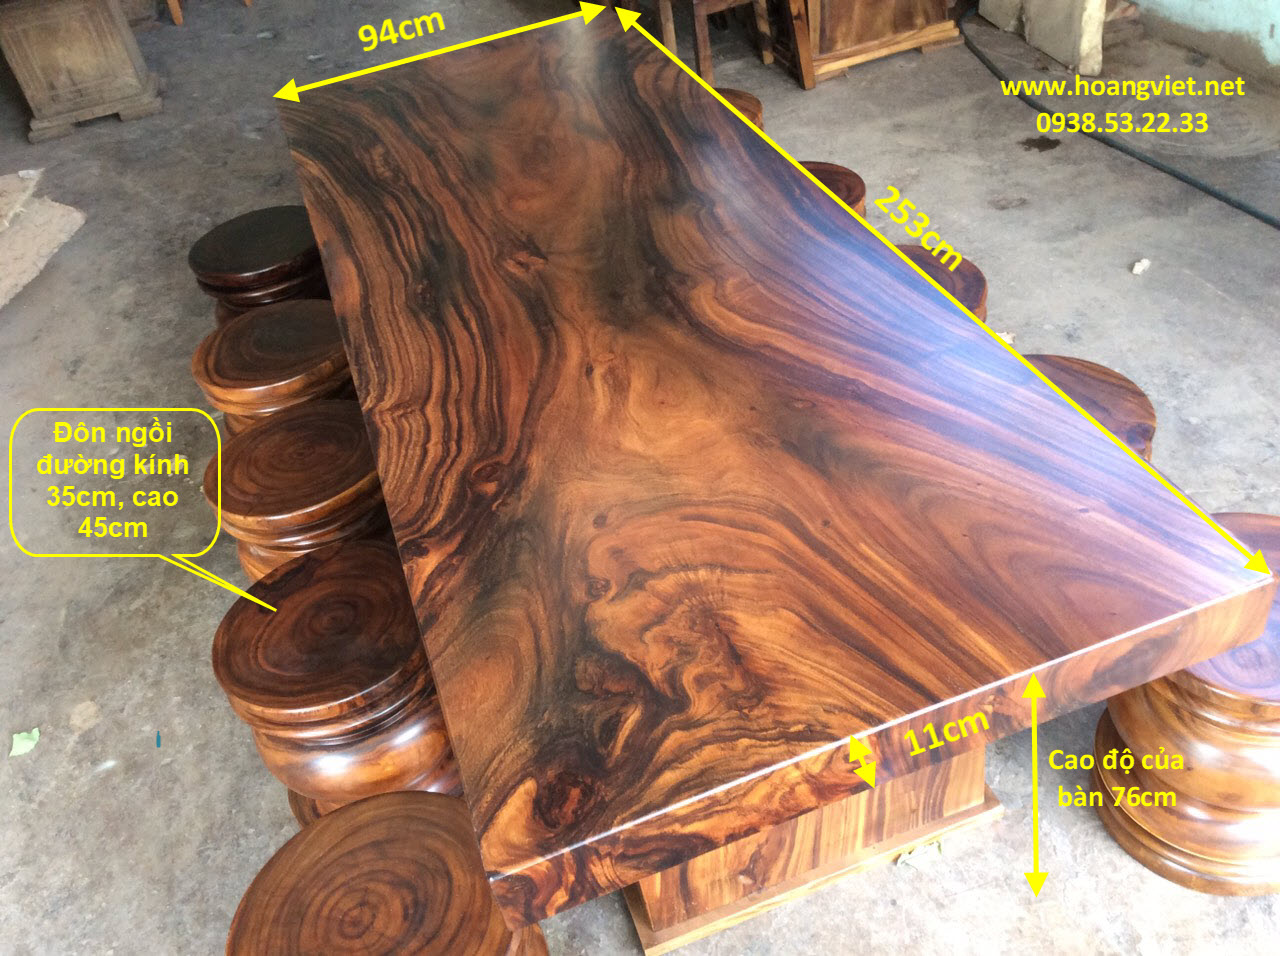 Chiếc bàn ghế gỗ nguyên khối là một nét độc đáo của nghệ thuật truyền thống Việt Nam. Chúng được chế tác từ các khối gỗ sang trọng, tạo ra nét đẹp cổ điển và hiện đại. Hãy xem qua hình ảnh về bàn ghế gỗ nguyên khối để khám phá và đam mê với những sản phẩm này.